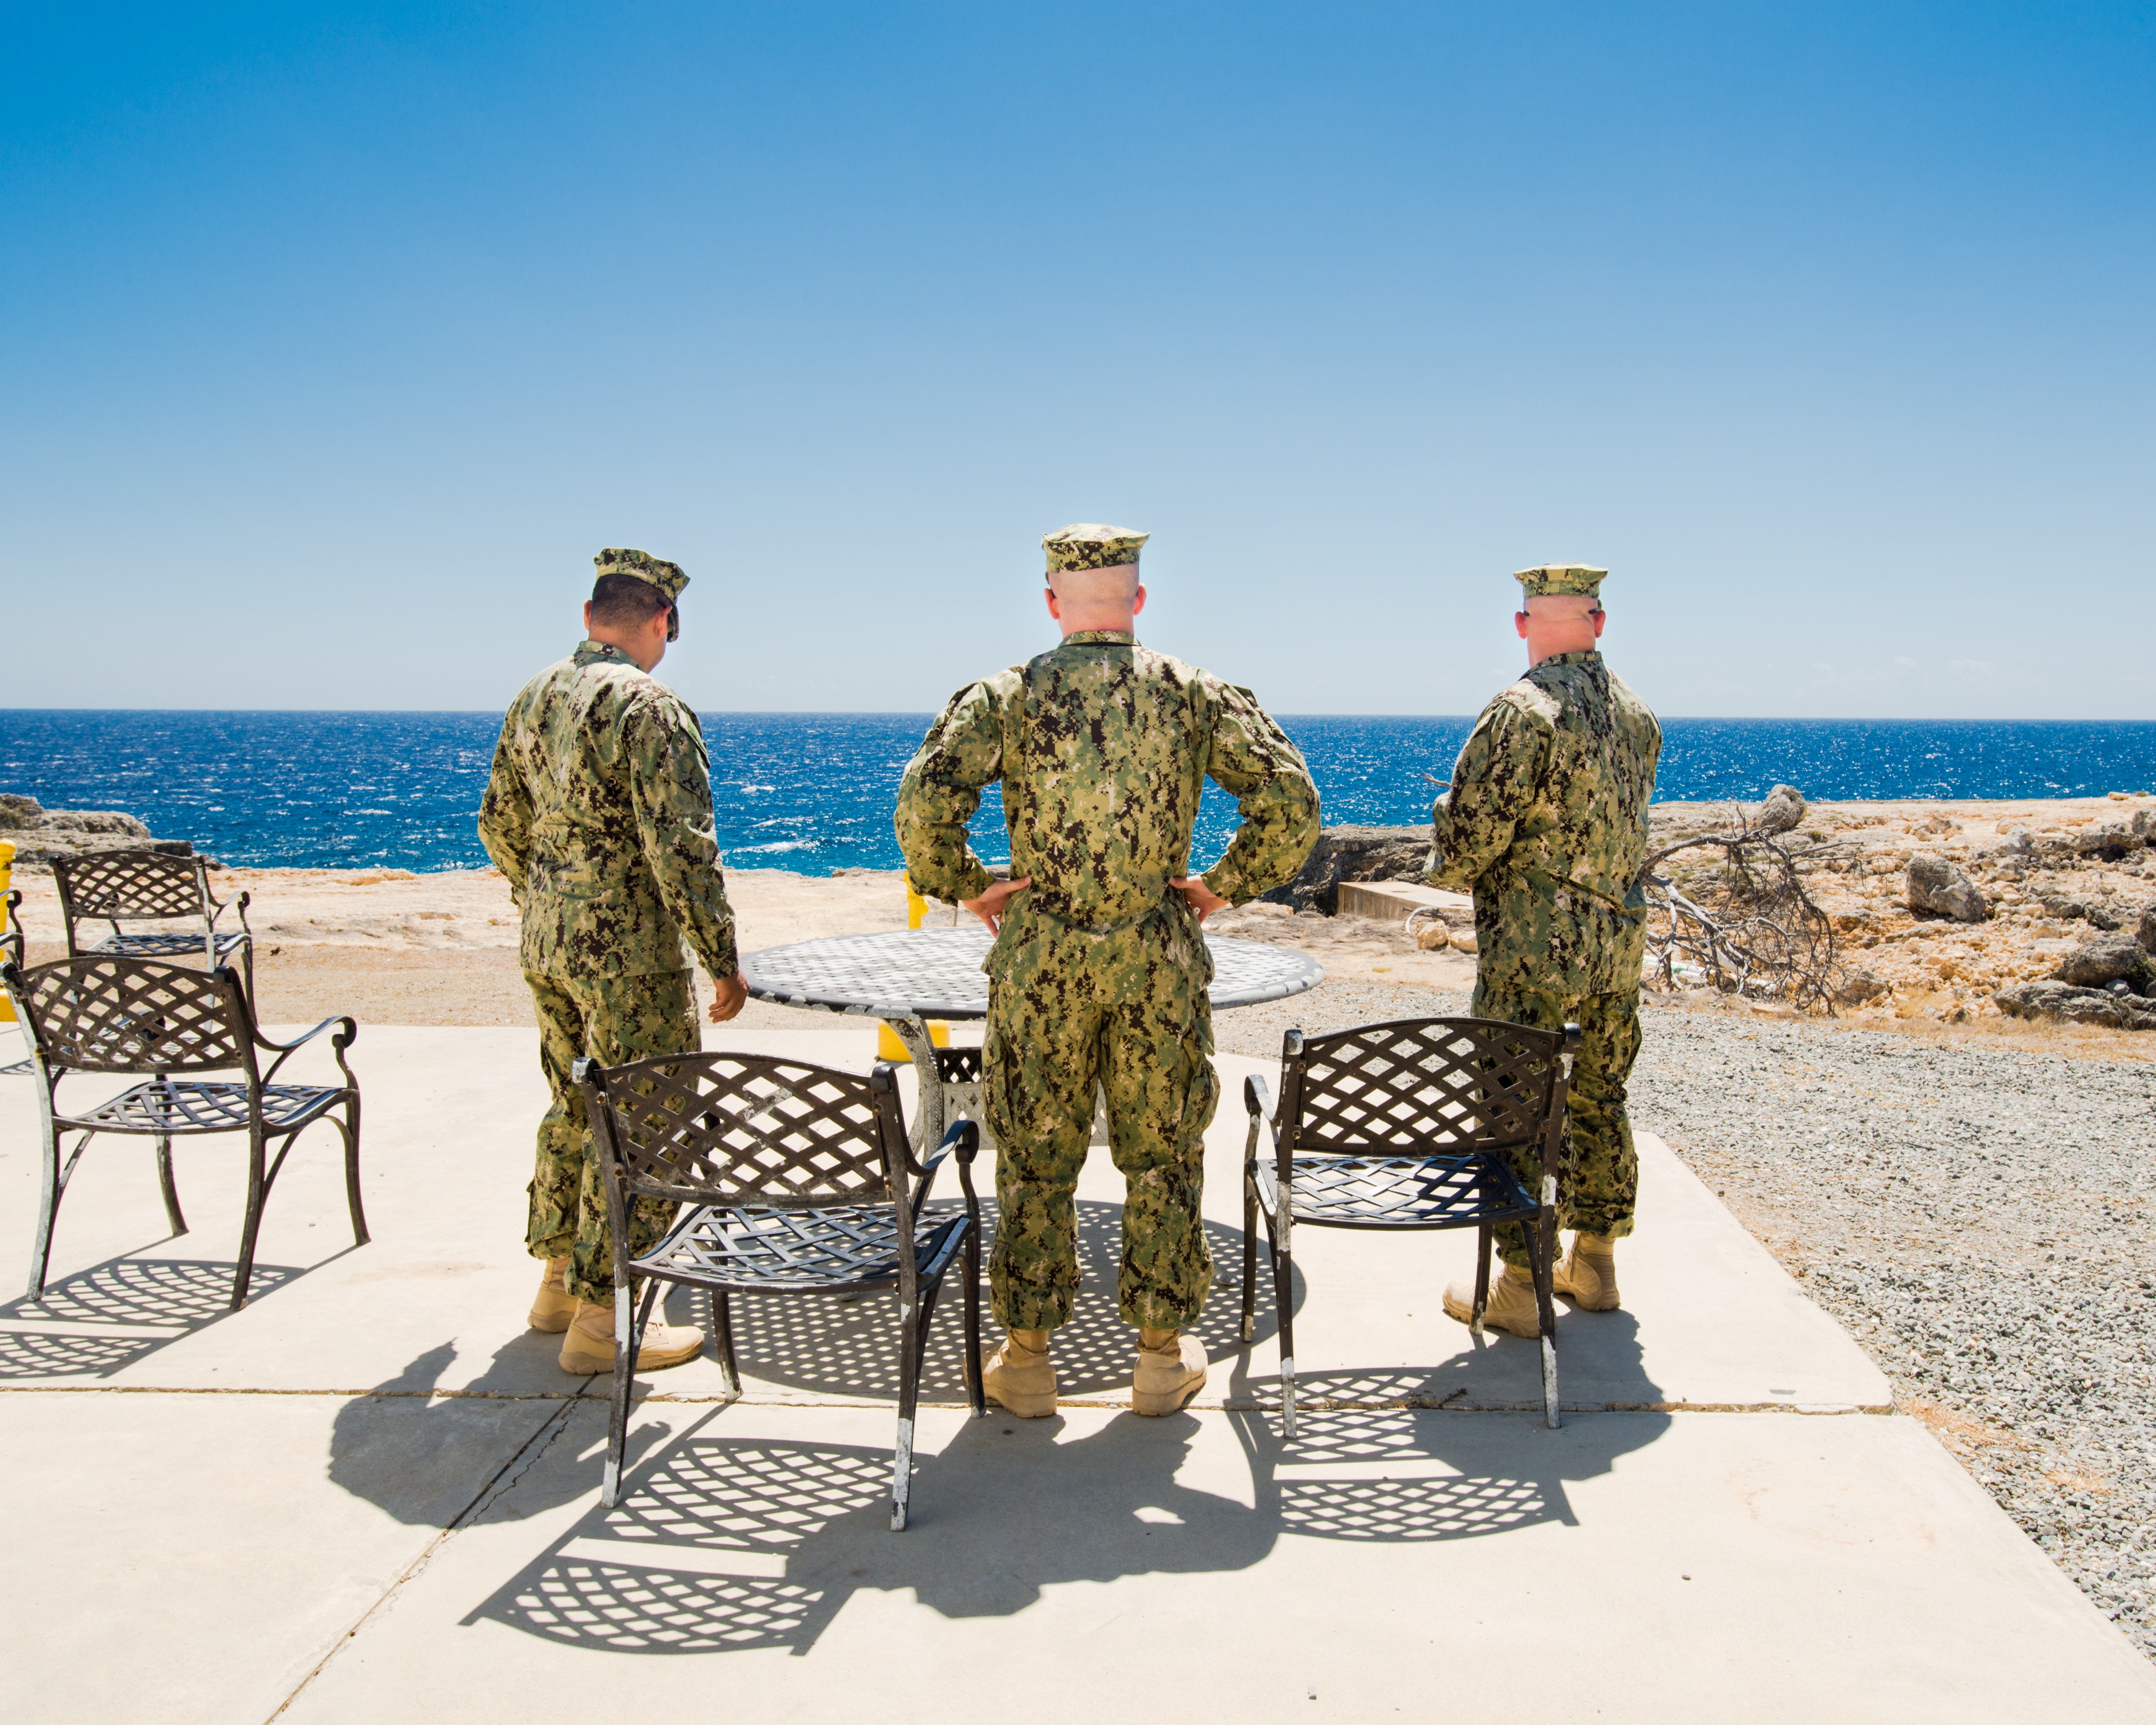 Drei Soldaten bei der Zigarettenpause, von hinten fotografiert, mit Blick aufs Meer. (c) Debi Cornwal